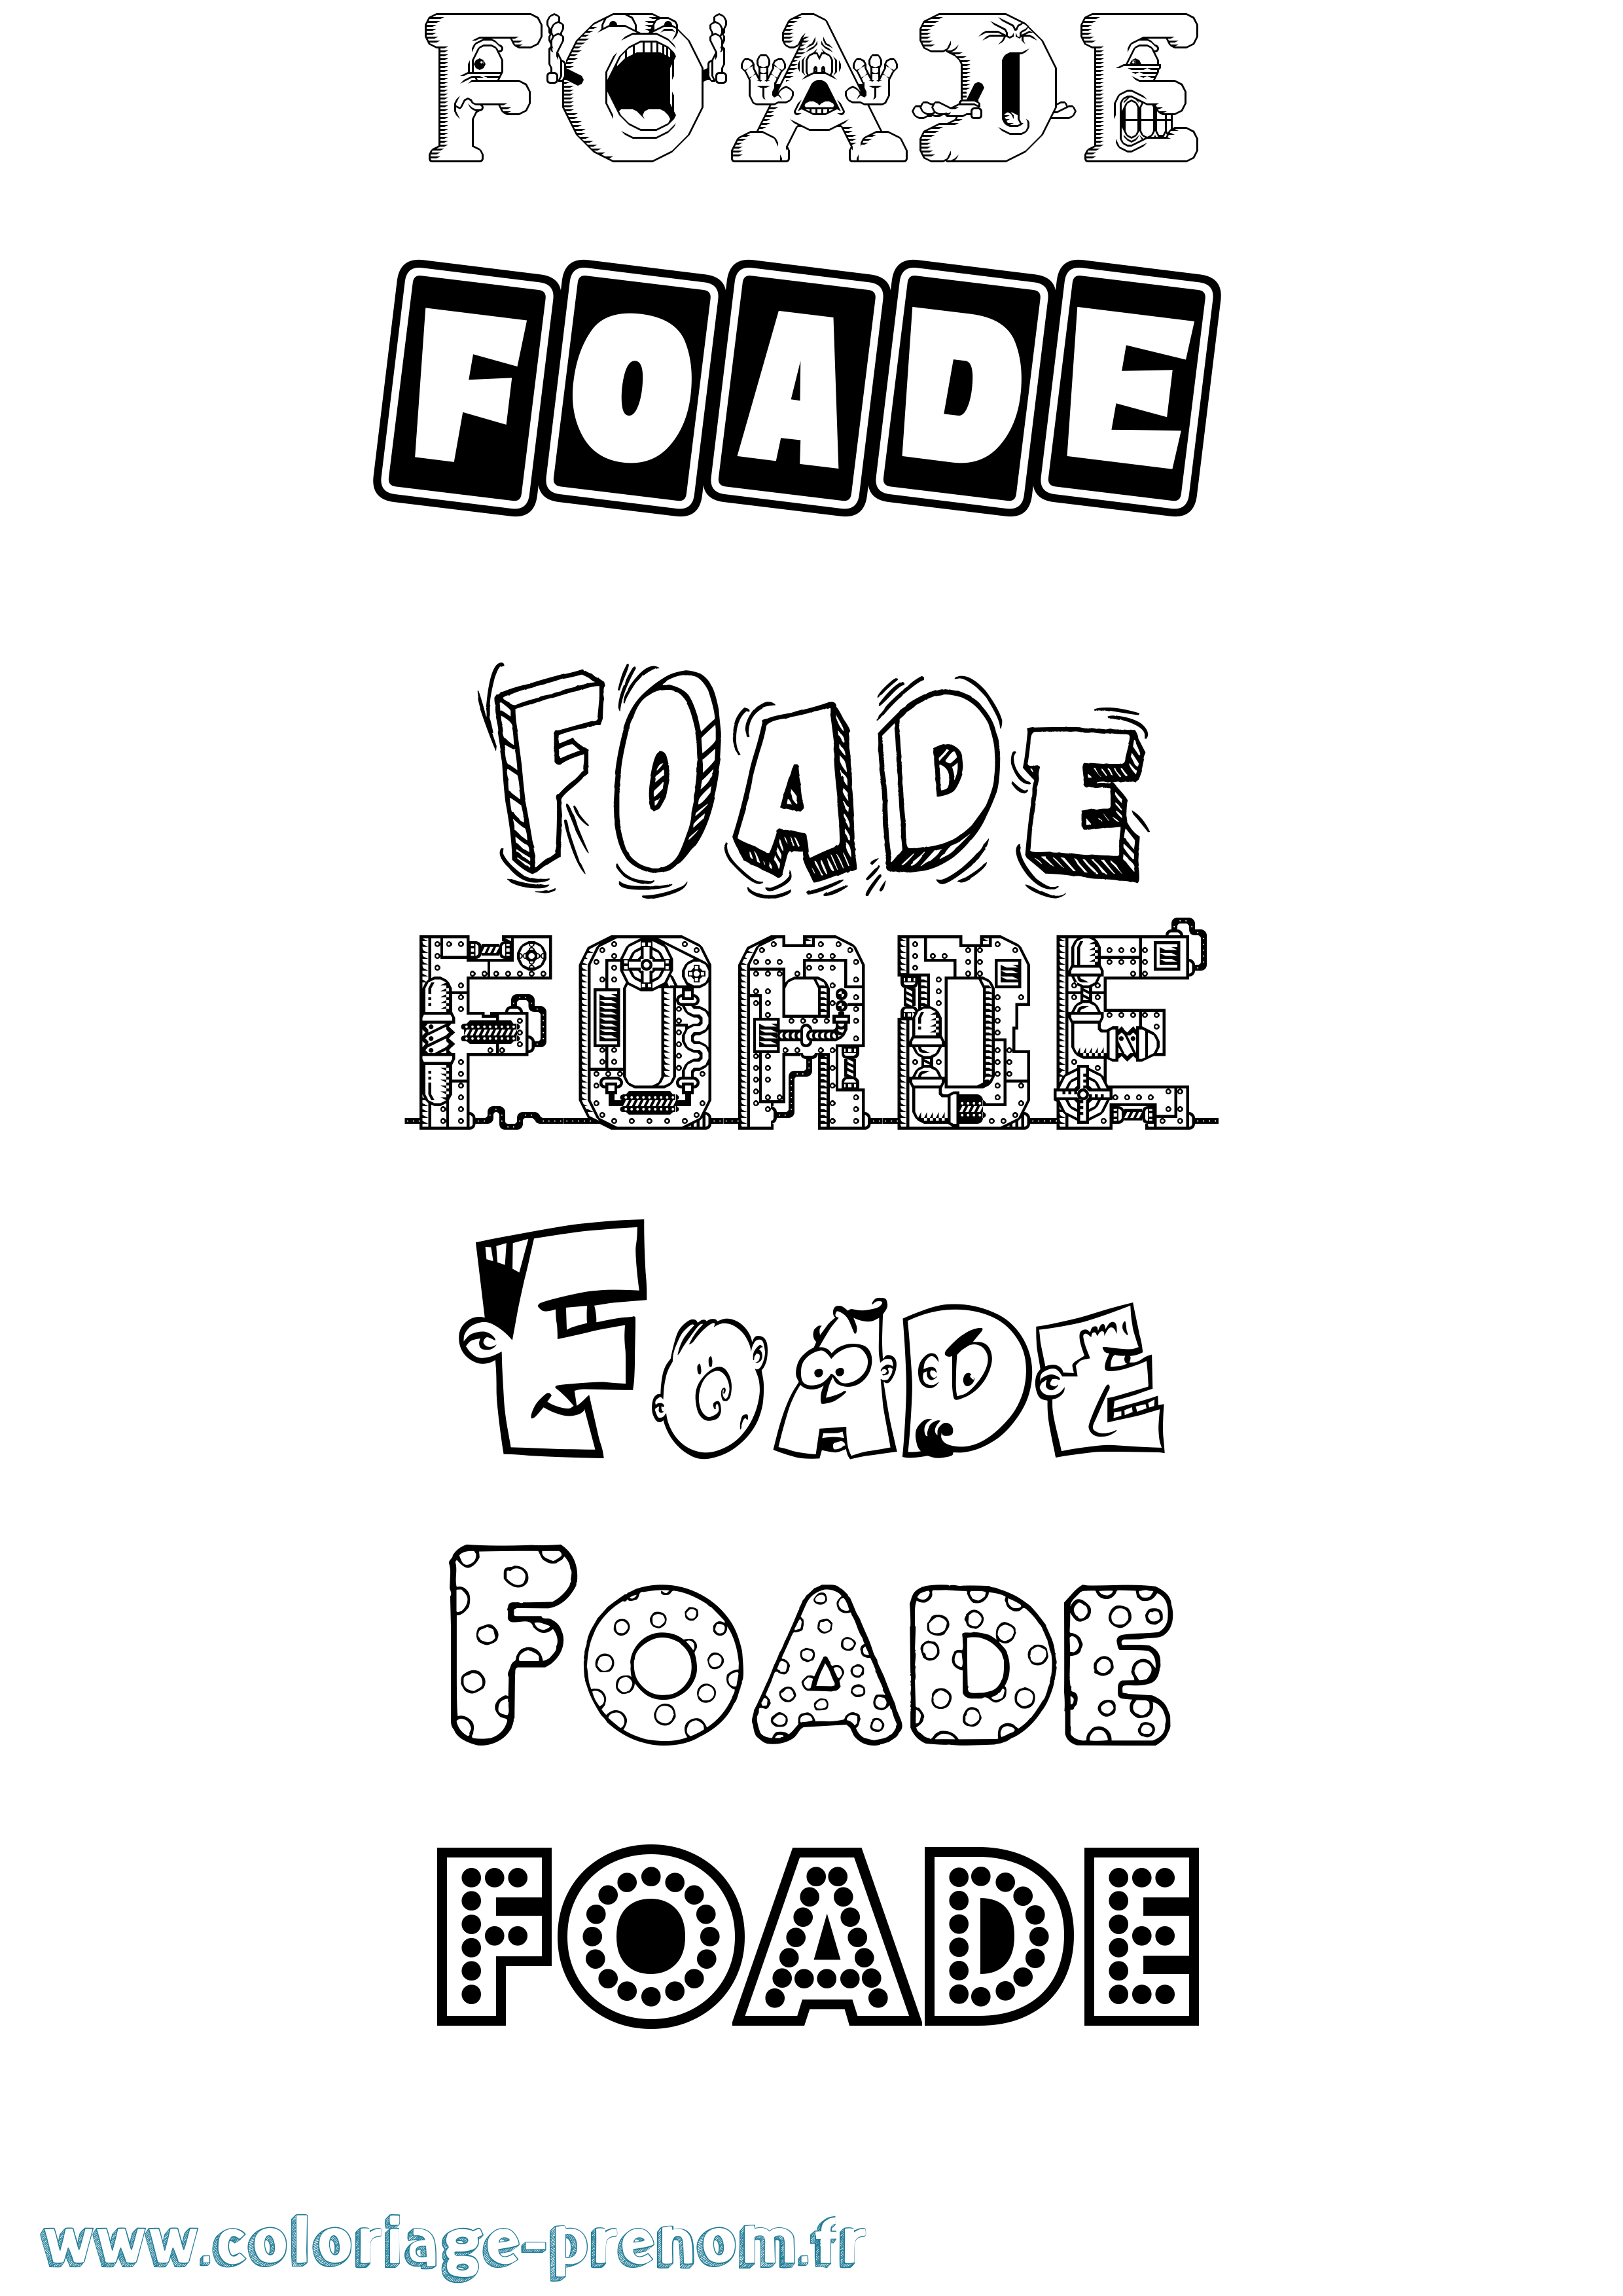 Coloriage prénom Foade Fun